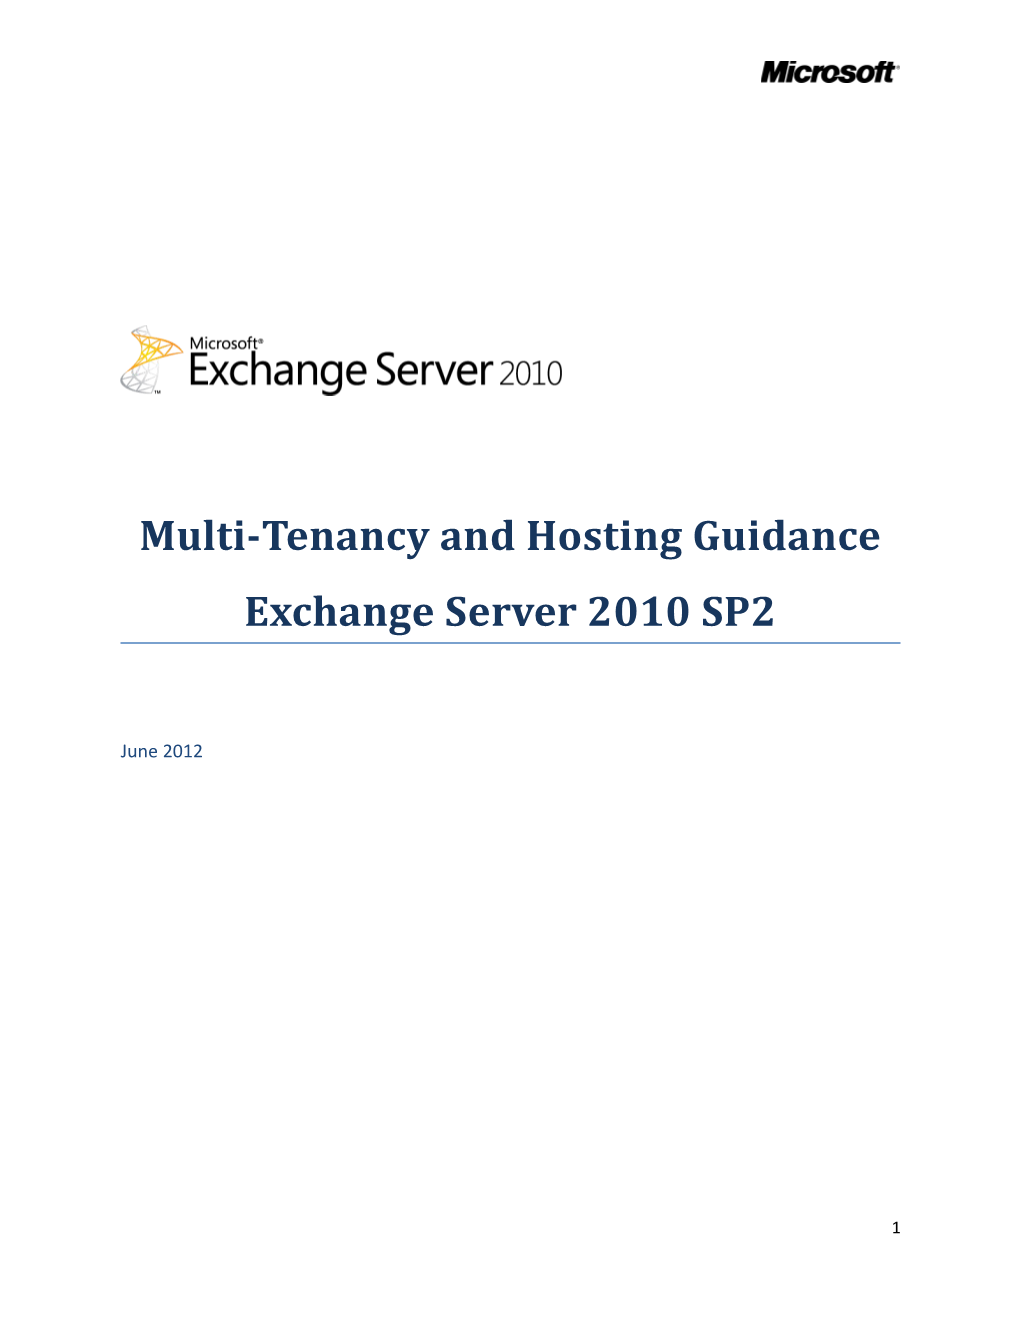 Hosting Guidance for Exchange Server 2010 SP2